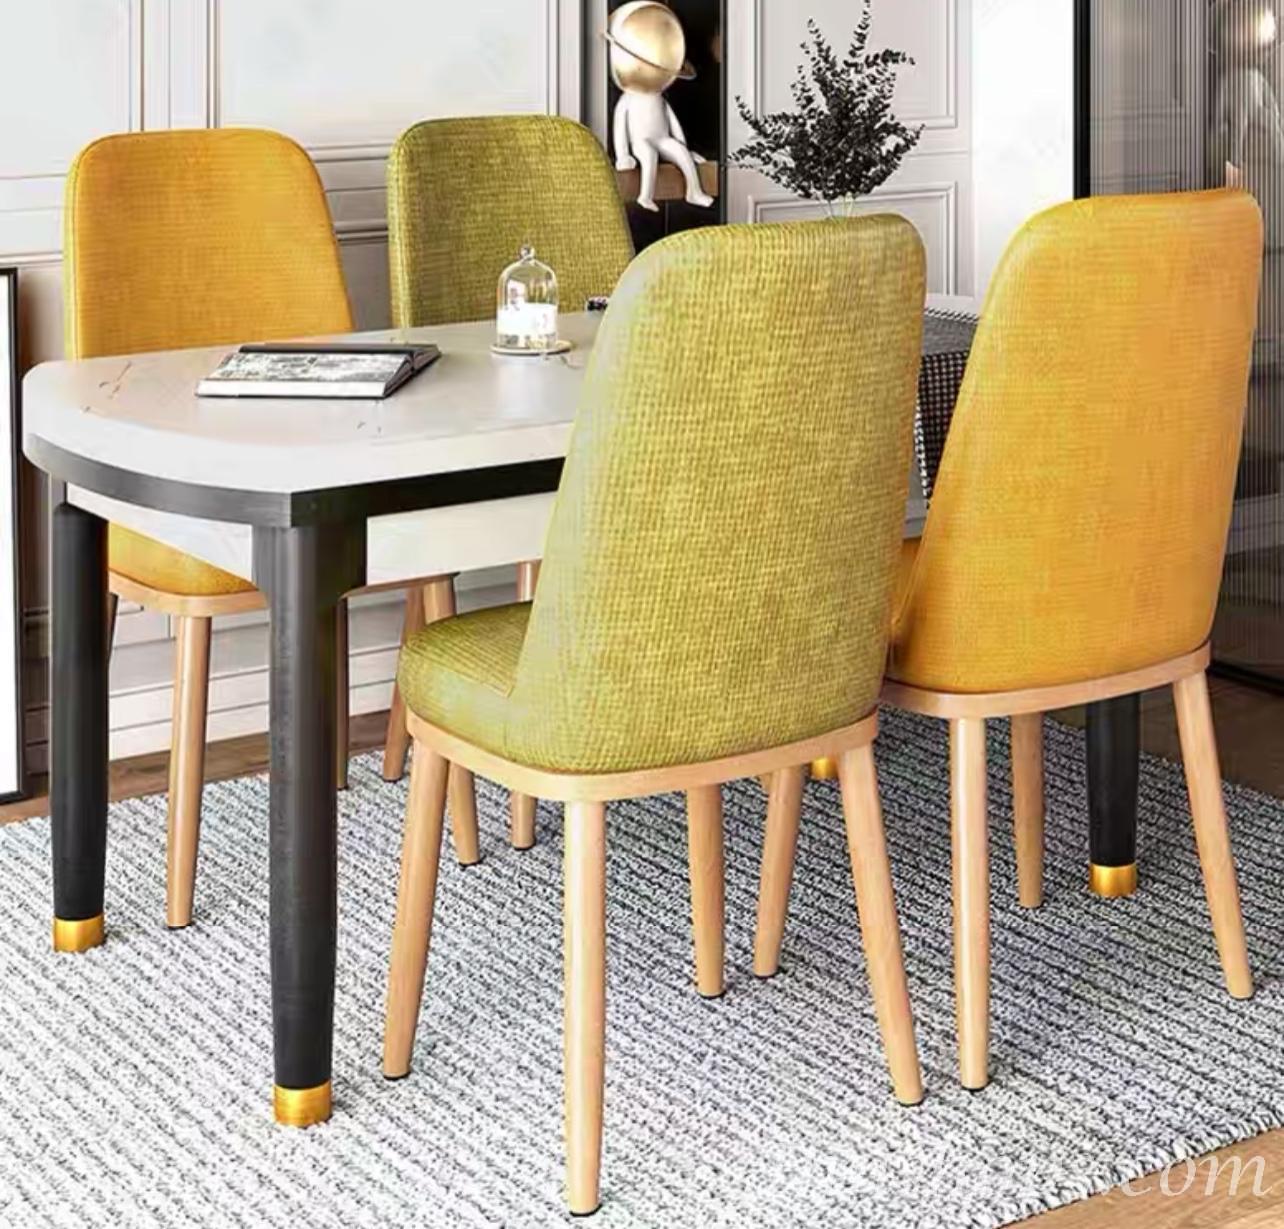 商業客戶訂購產品系列  麻布/仿皮餐椅(IS6693)